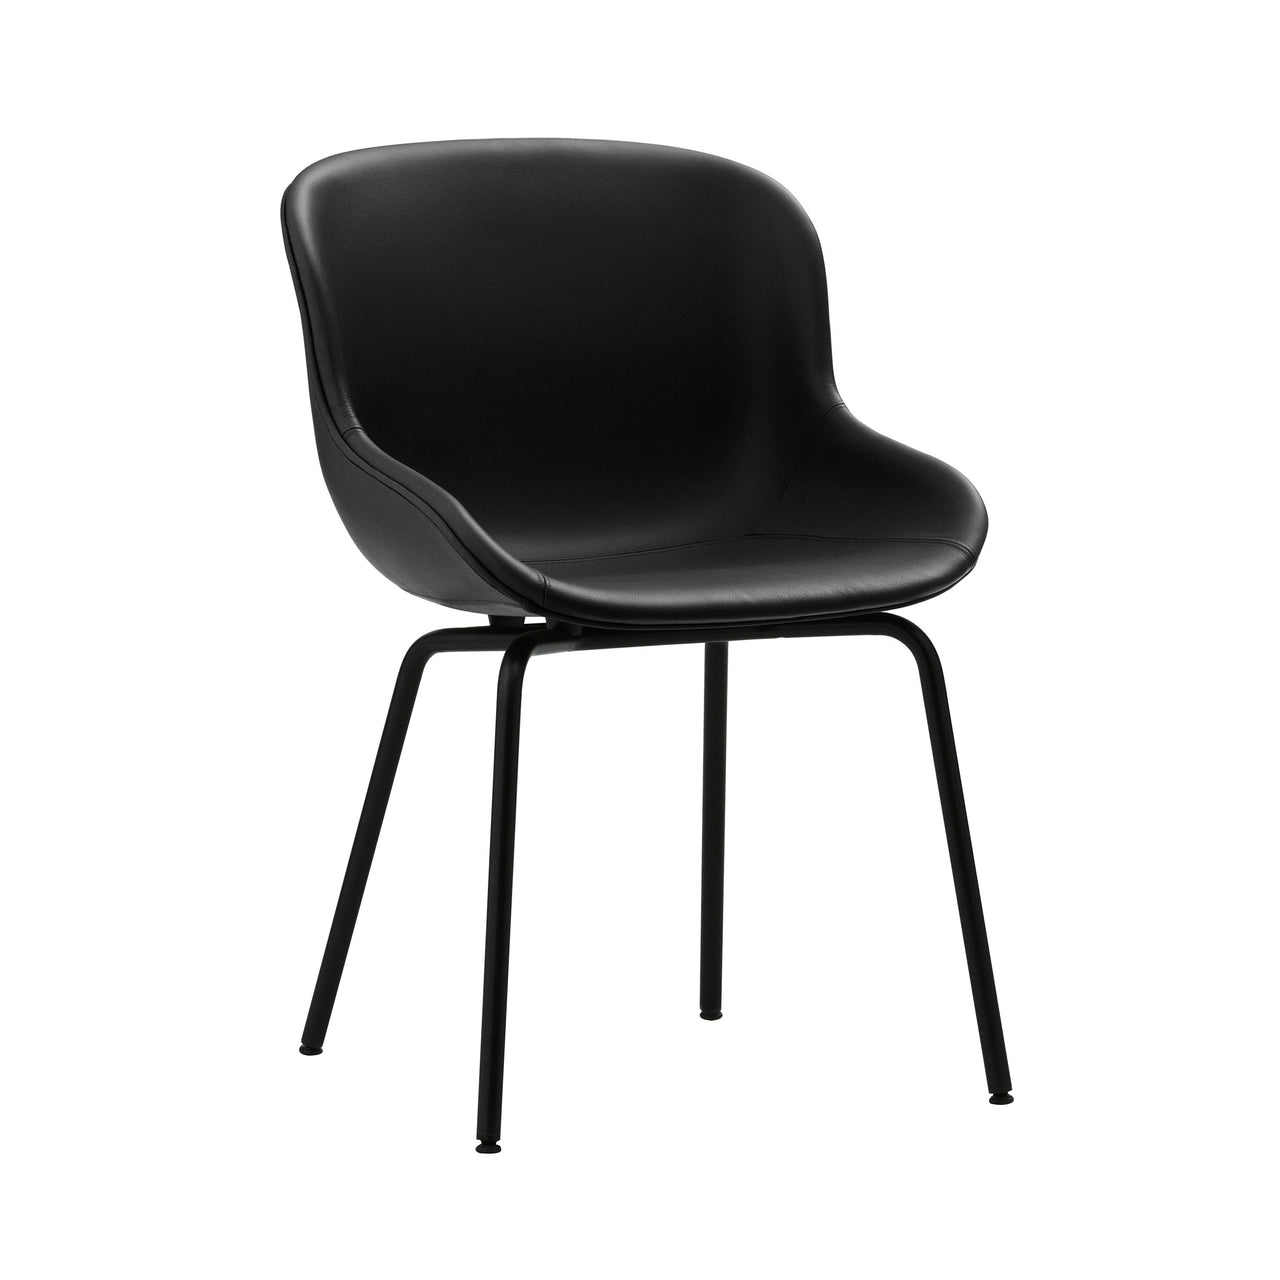 Hyg Chair: Steel Base + Full Upholstered + Black